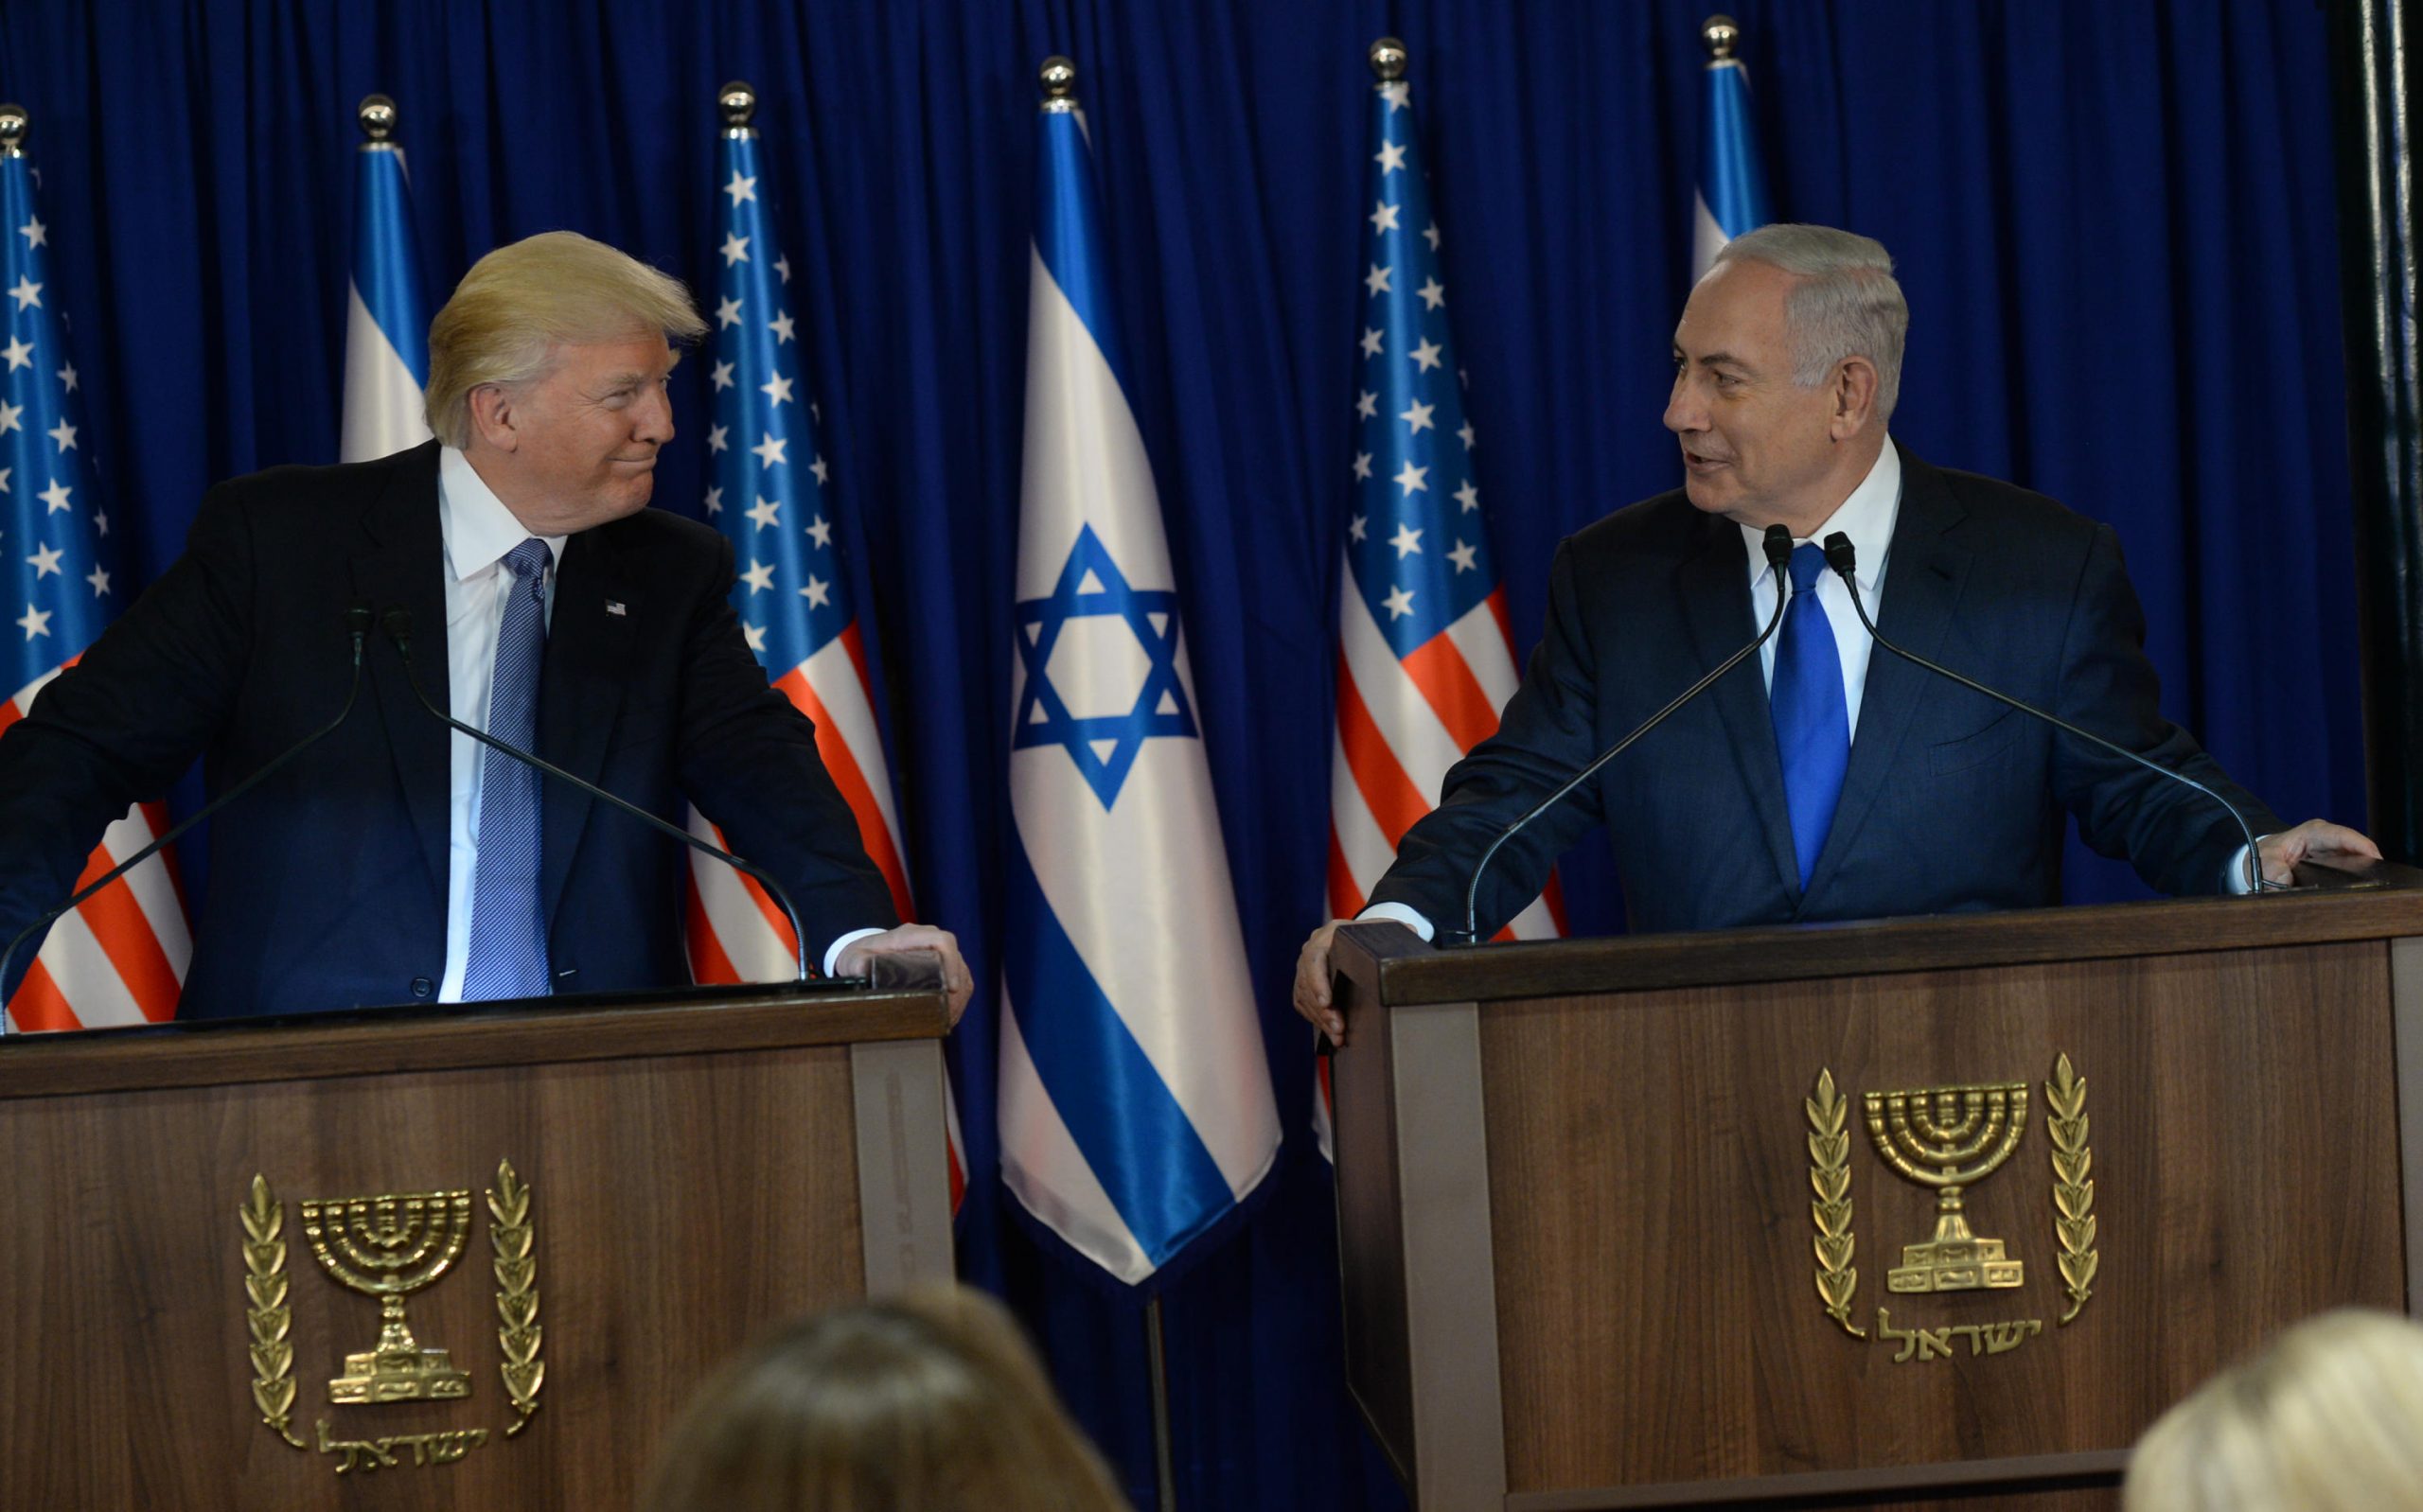 Trump og Netanyahu står ved hver sin talerstol og ser på hverandre vennlig